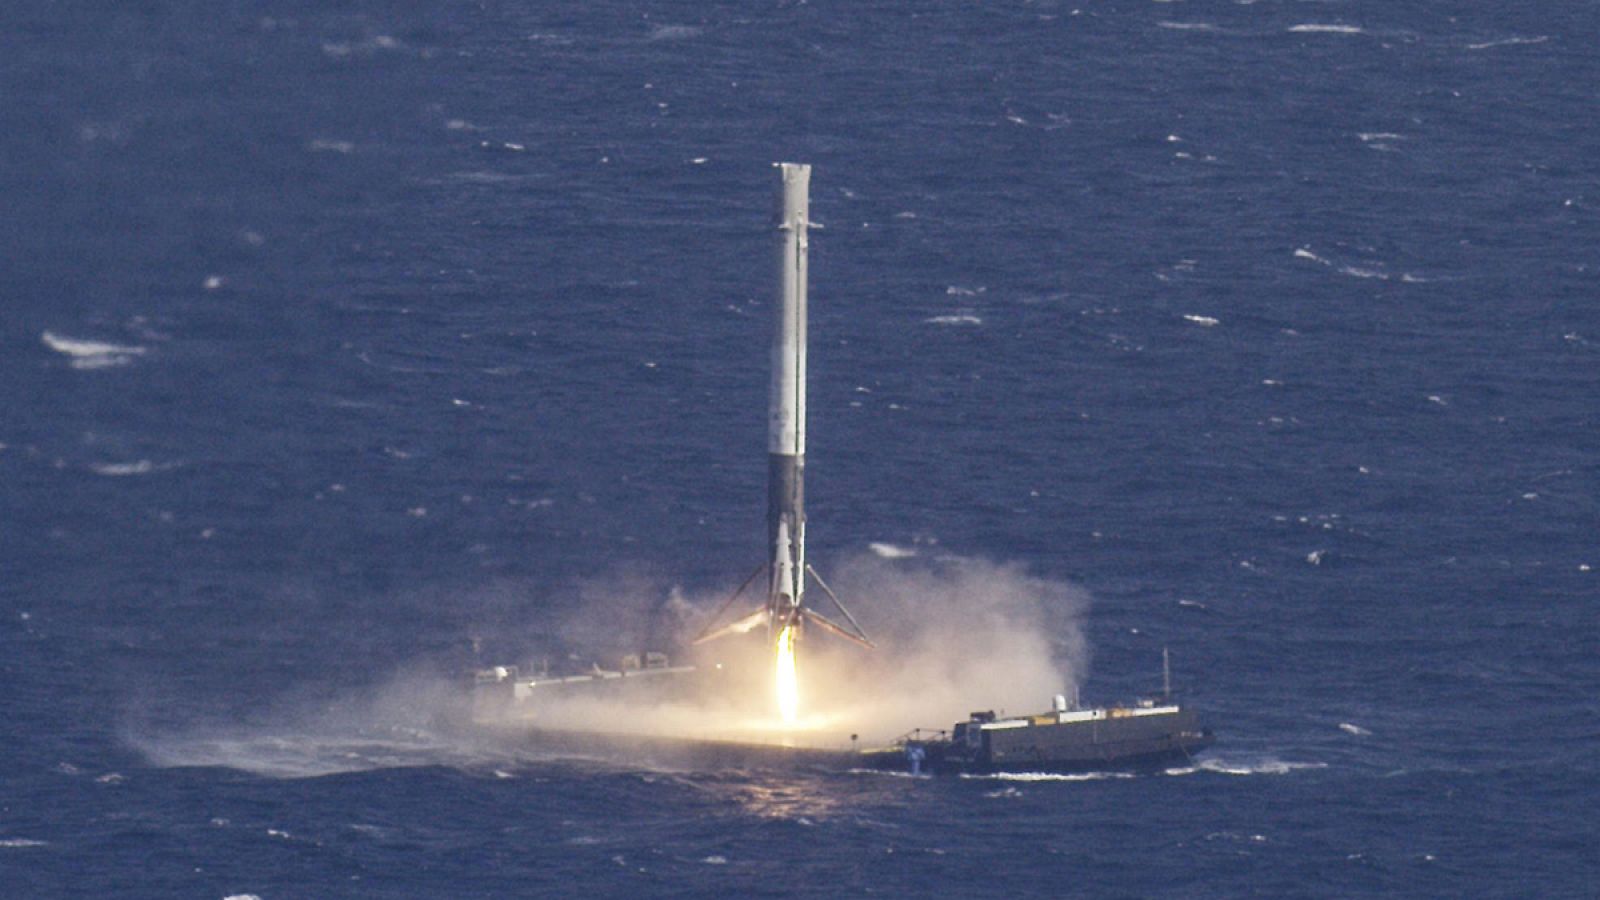 El cohete se posó suavemente en la pequeña plataforma y apagó sus motores, quedando en reposo vertical.